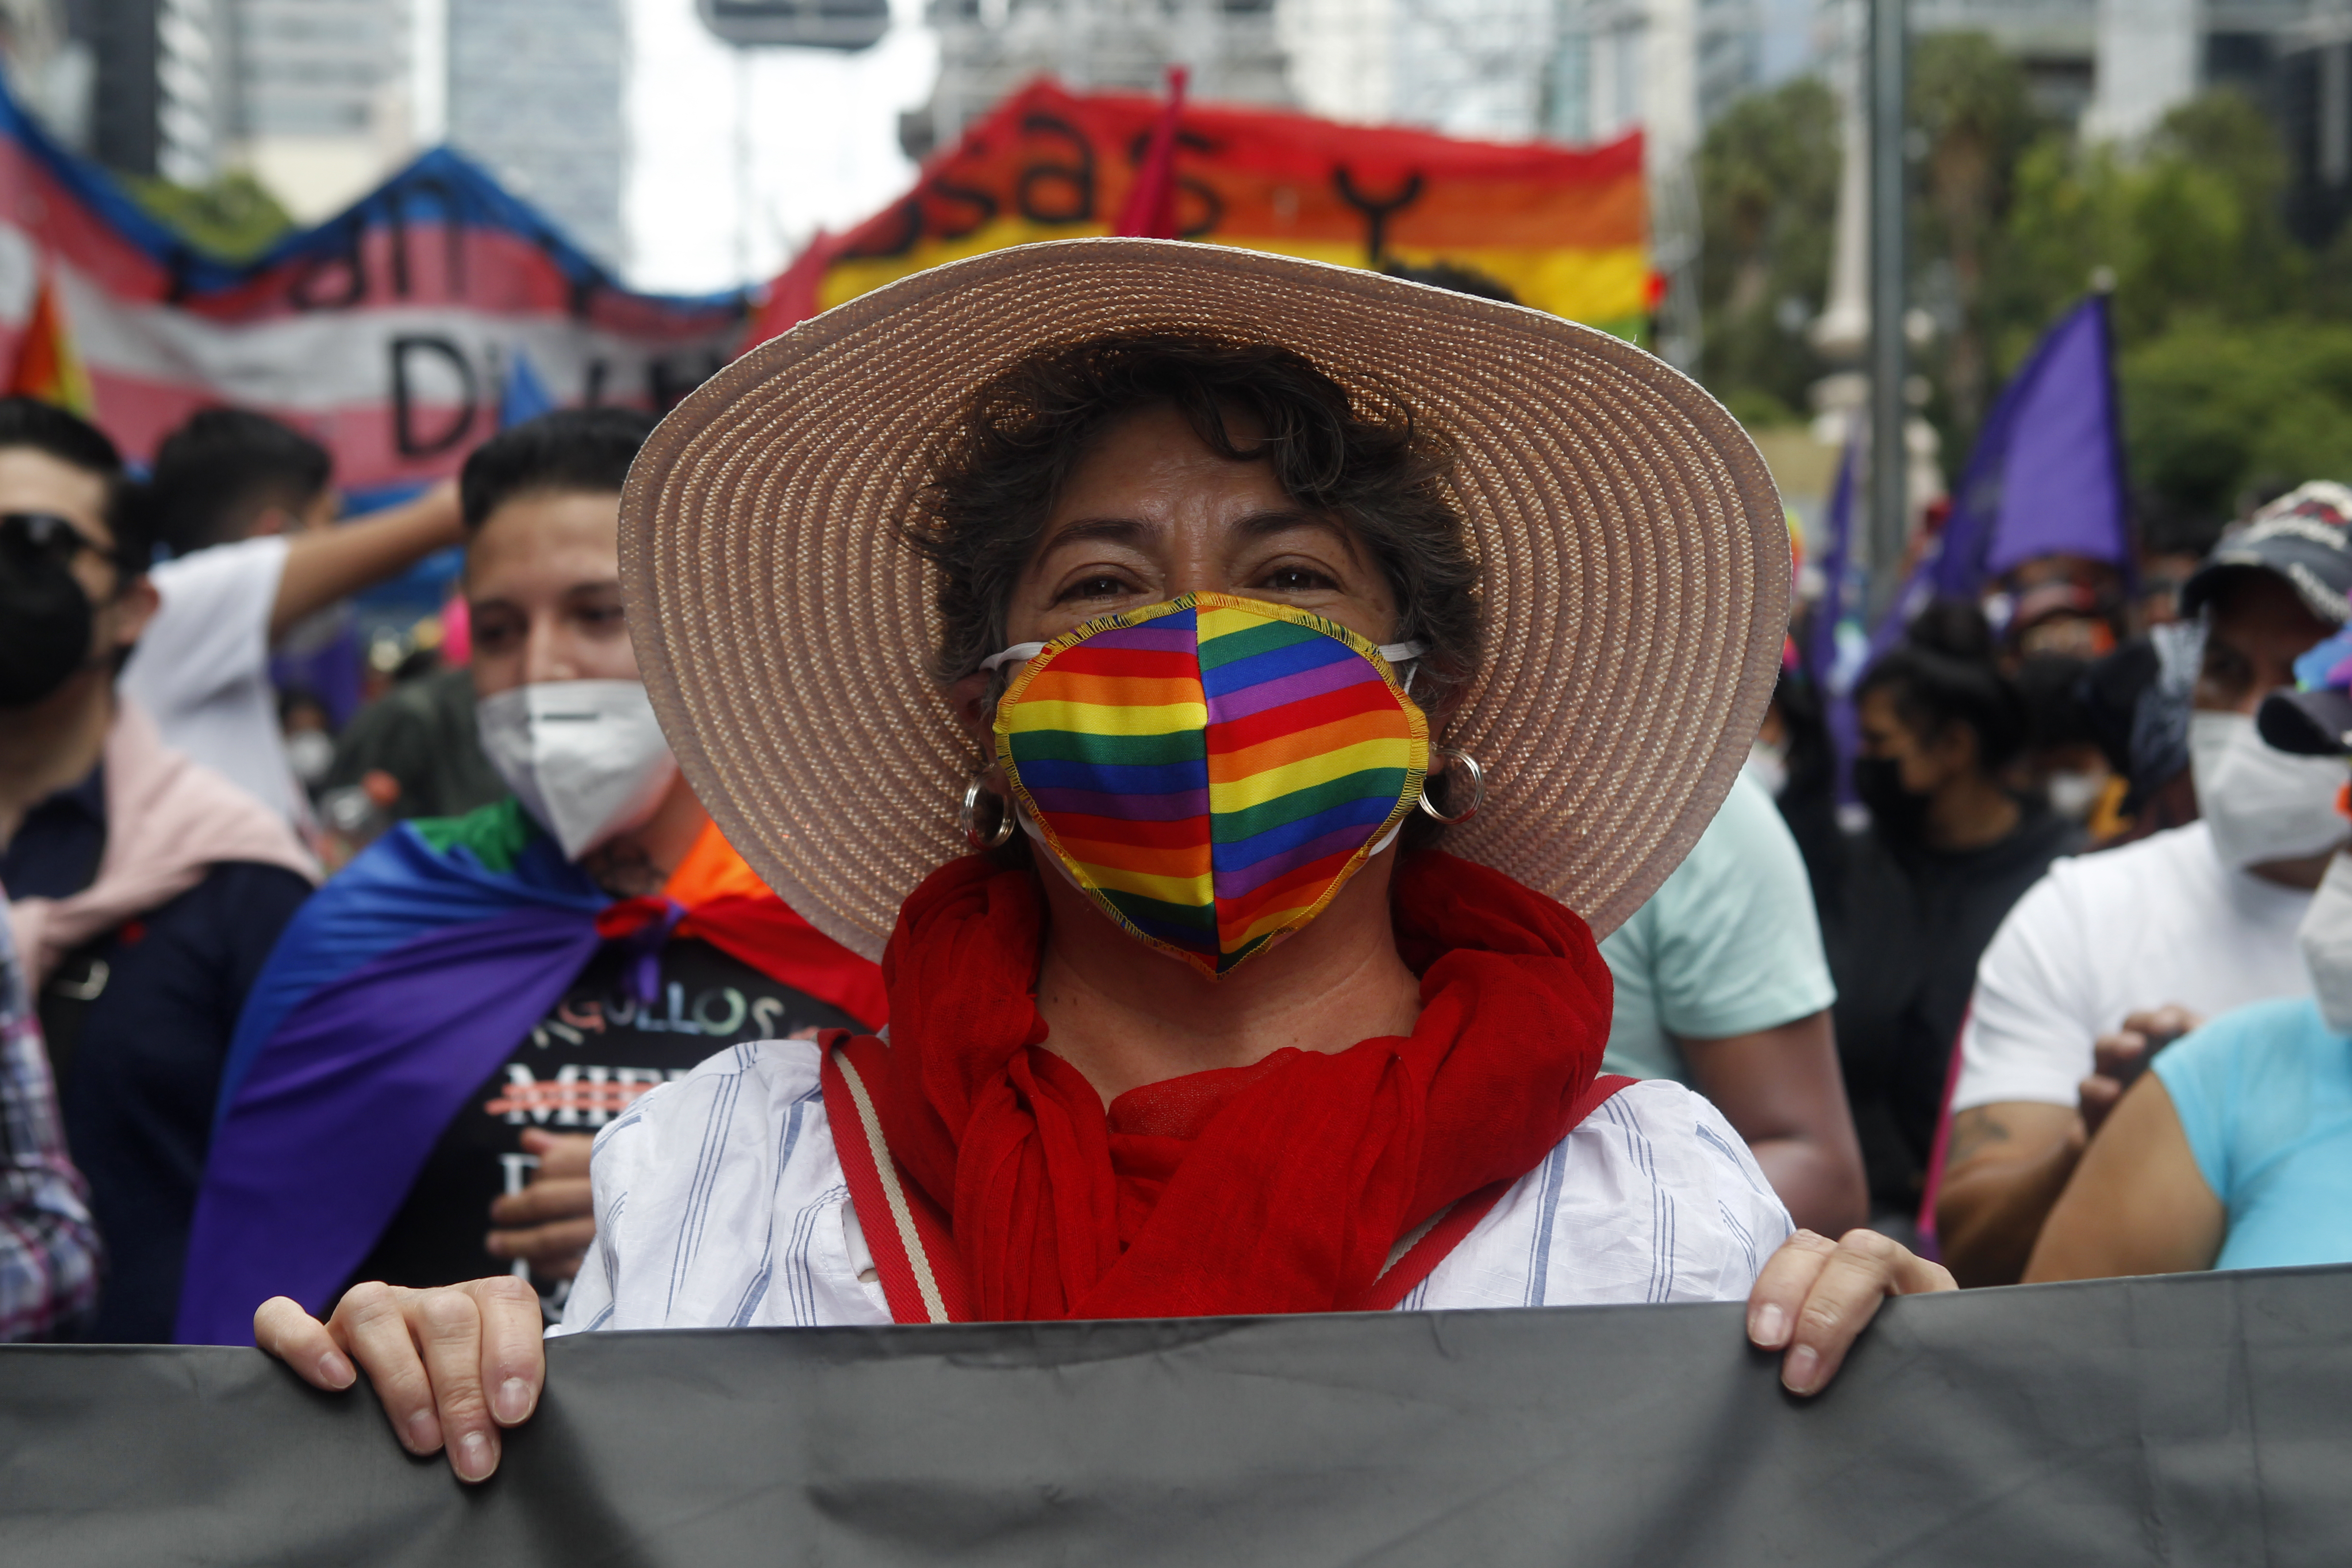 El propósito de la marcha es promover la diversidad libre de odio (Foto: Karina Herández / Infobae)